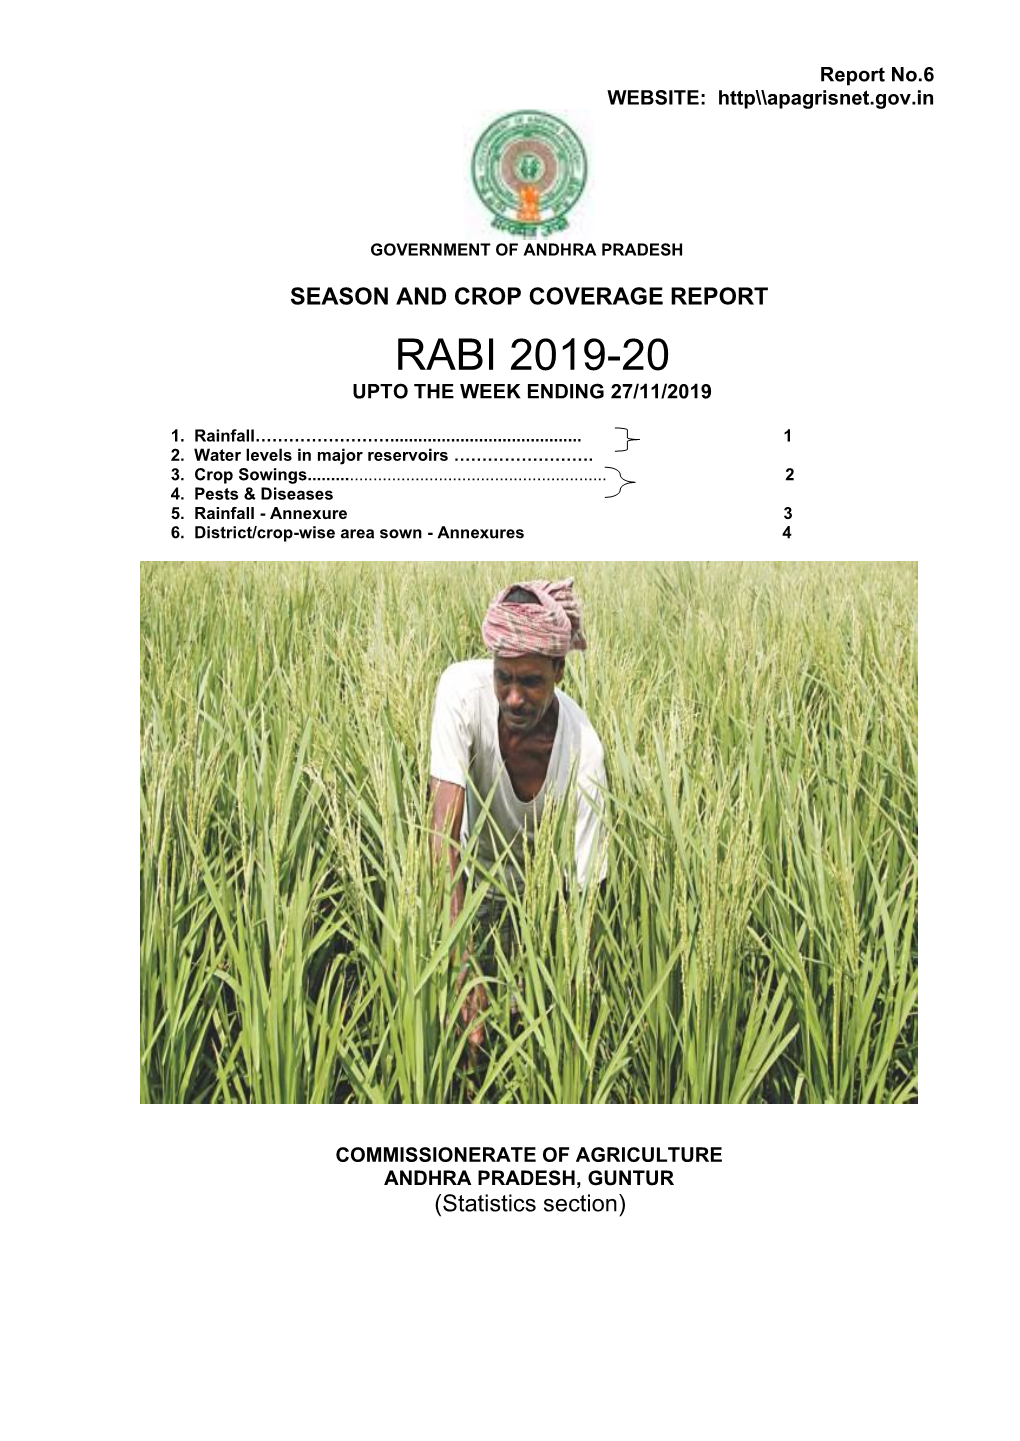 RABI 2019-20 -.:: Agriculture Department Andhra Pradesh